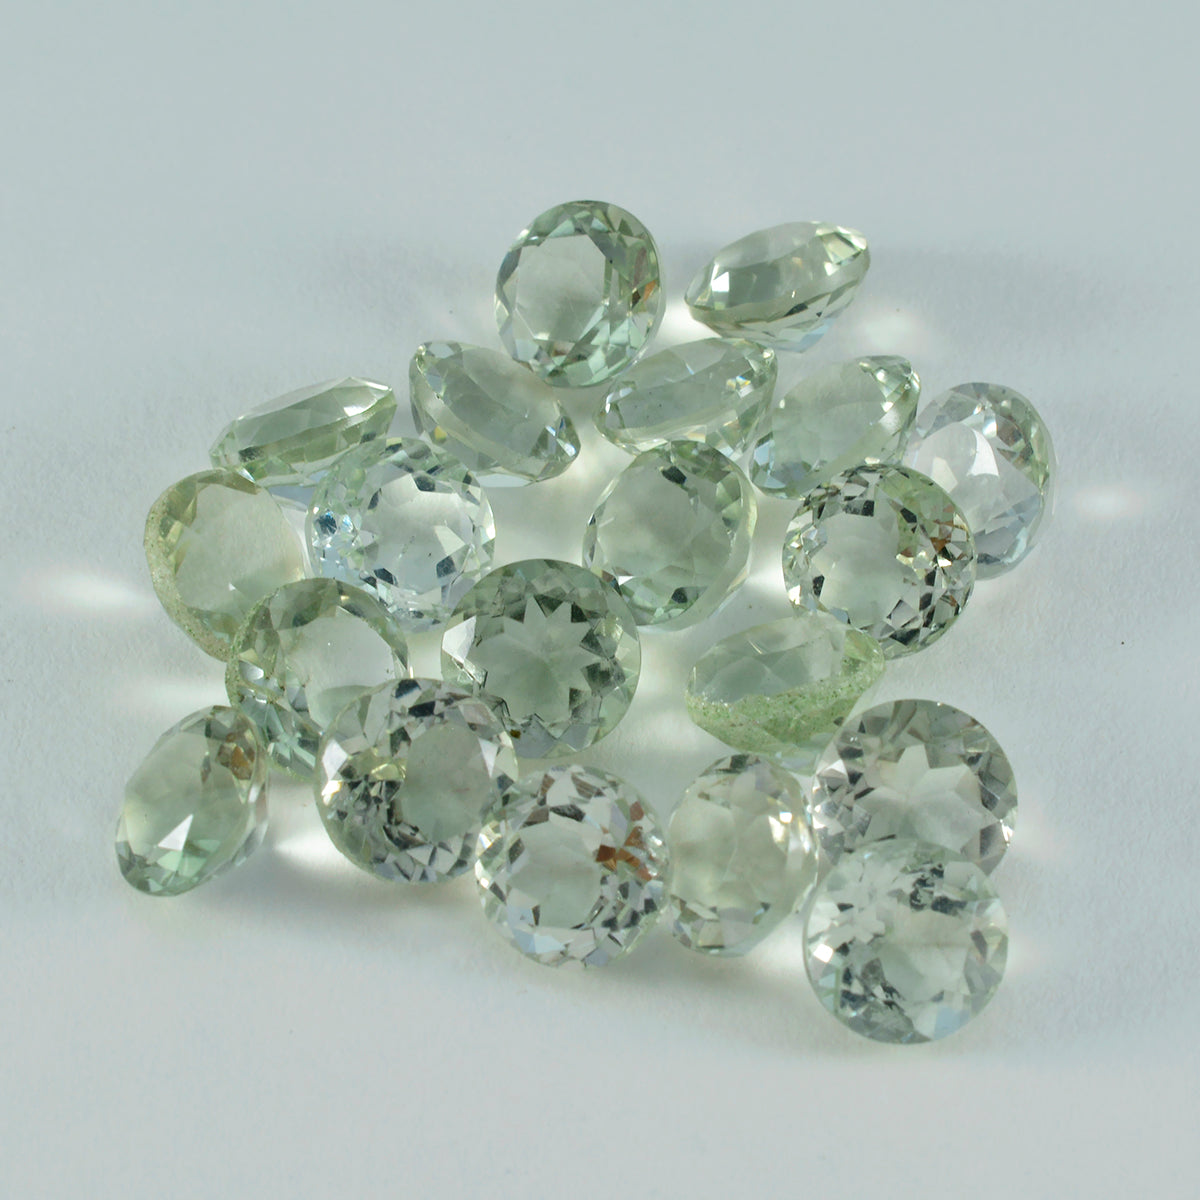 Riyogems 1 Stück grüner Amethyst, facettiert, 6 x 6 mm, runde Form, schön aussehender, hochwertiger loser Stein